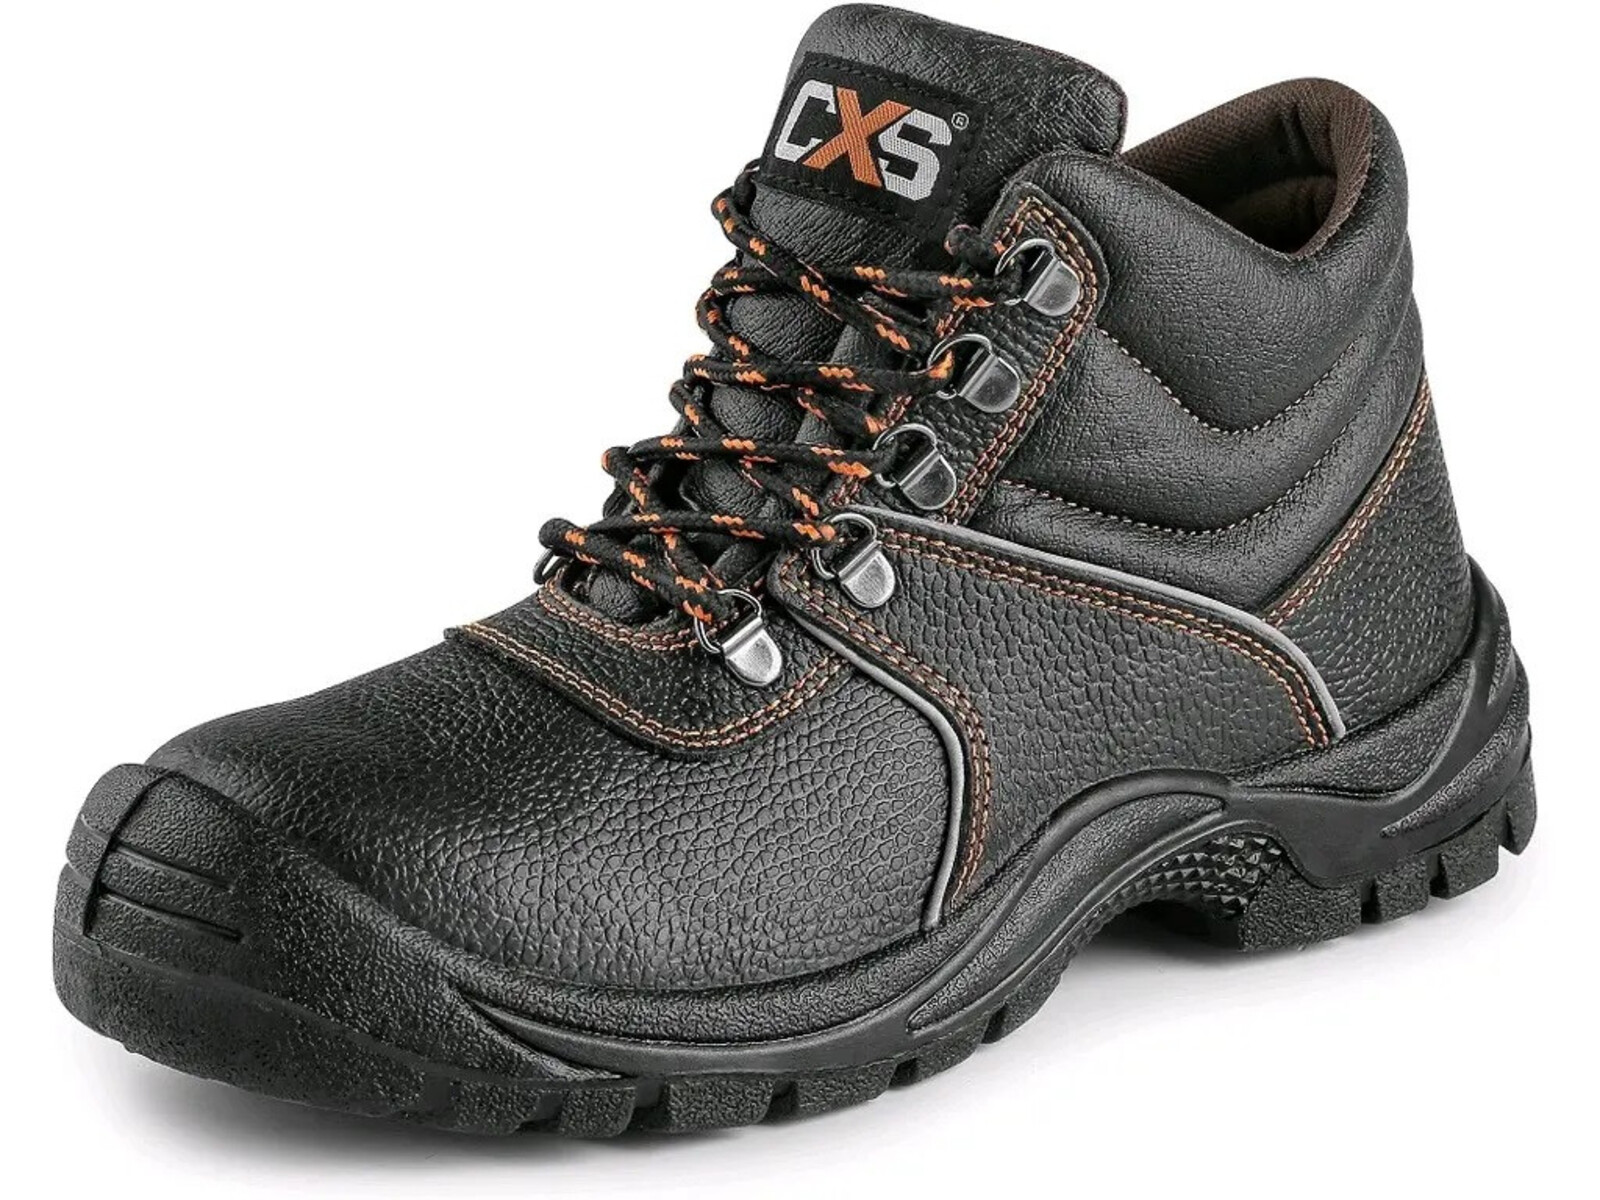 Bezpečnostná členková obuv CXS Stone Marble S3 SRC - veľkosť: 50, farba: čierna/oranžová